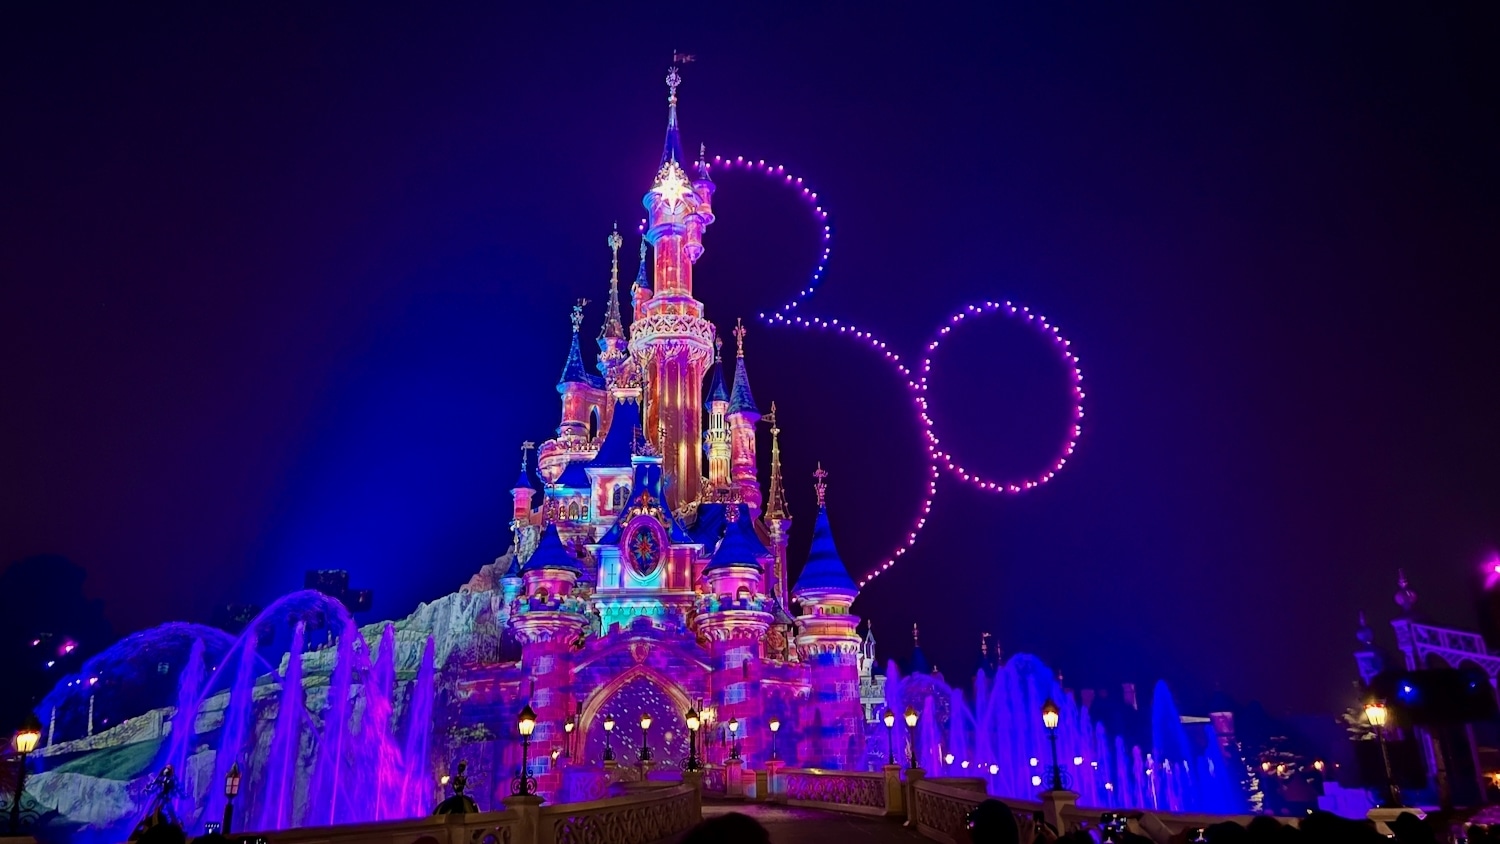 Logo del 30 aniversario con drones en espectáculo nocturno de Disneyland Paris